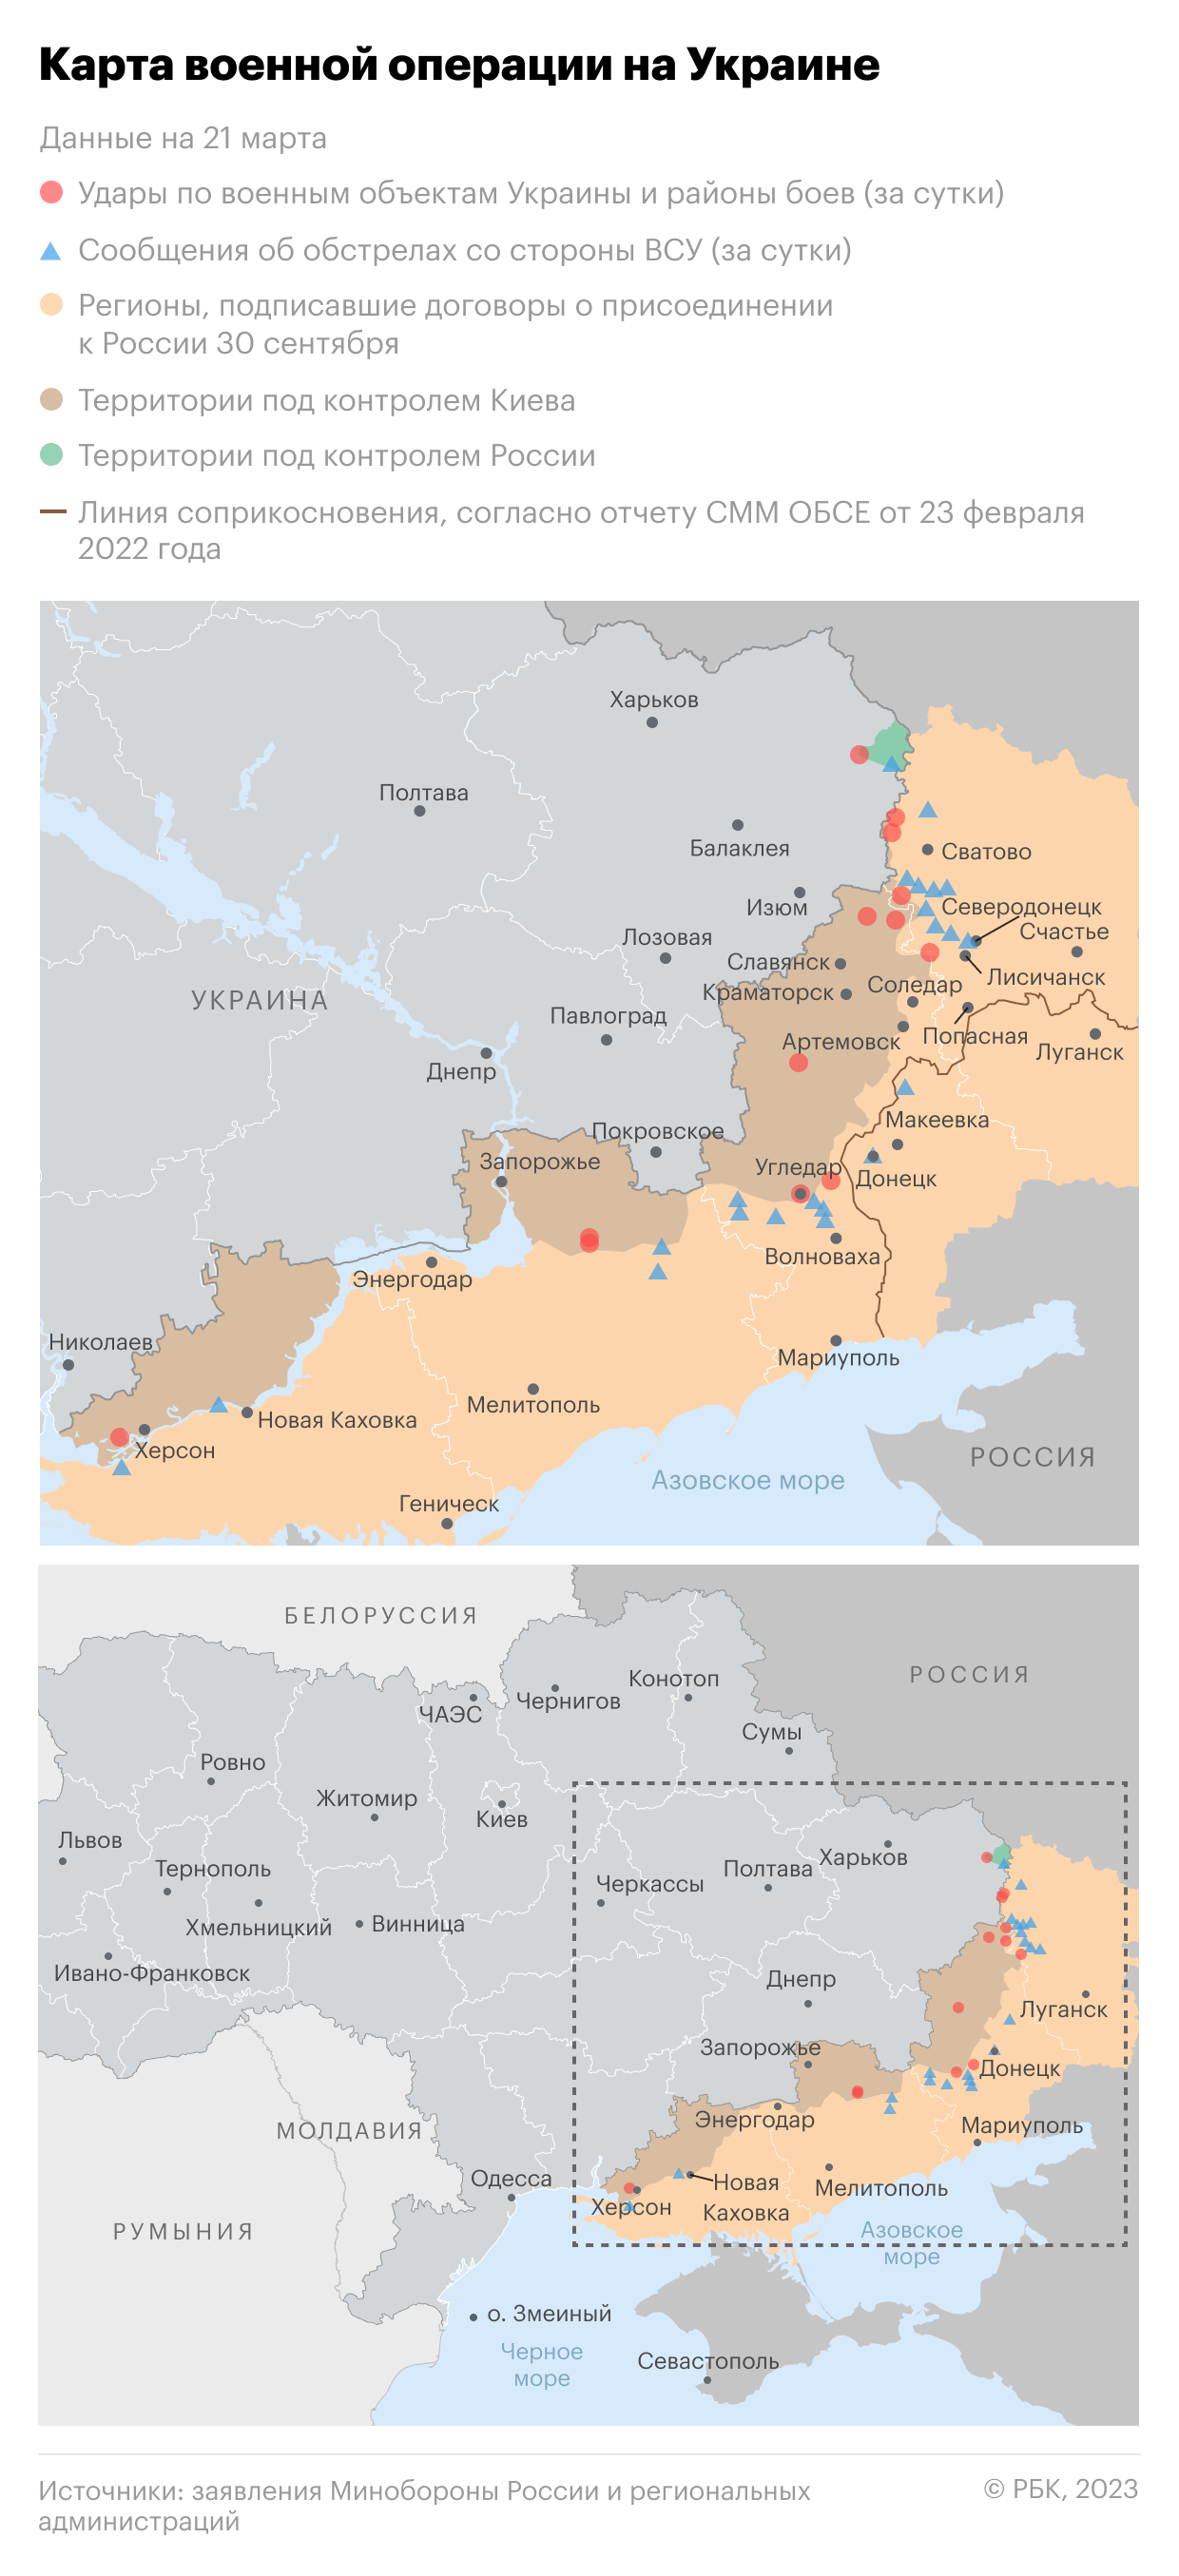 Пентагон отверг передачу Украине данных о дислокации командиров ВС России